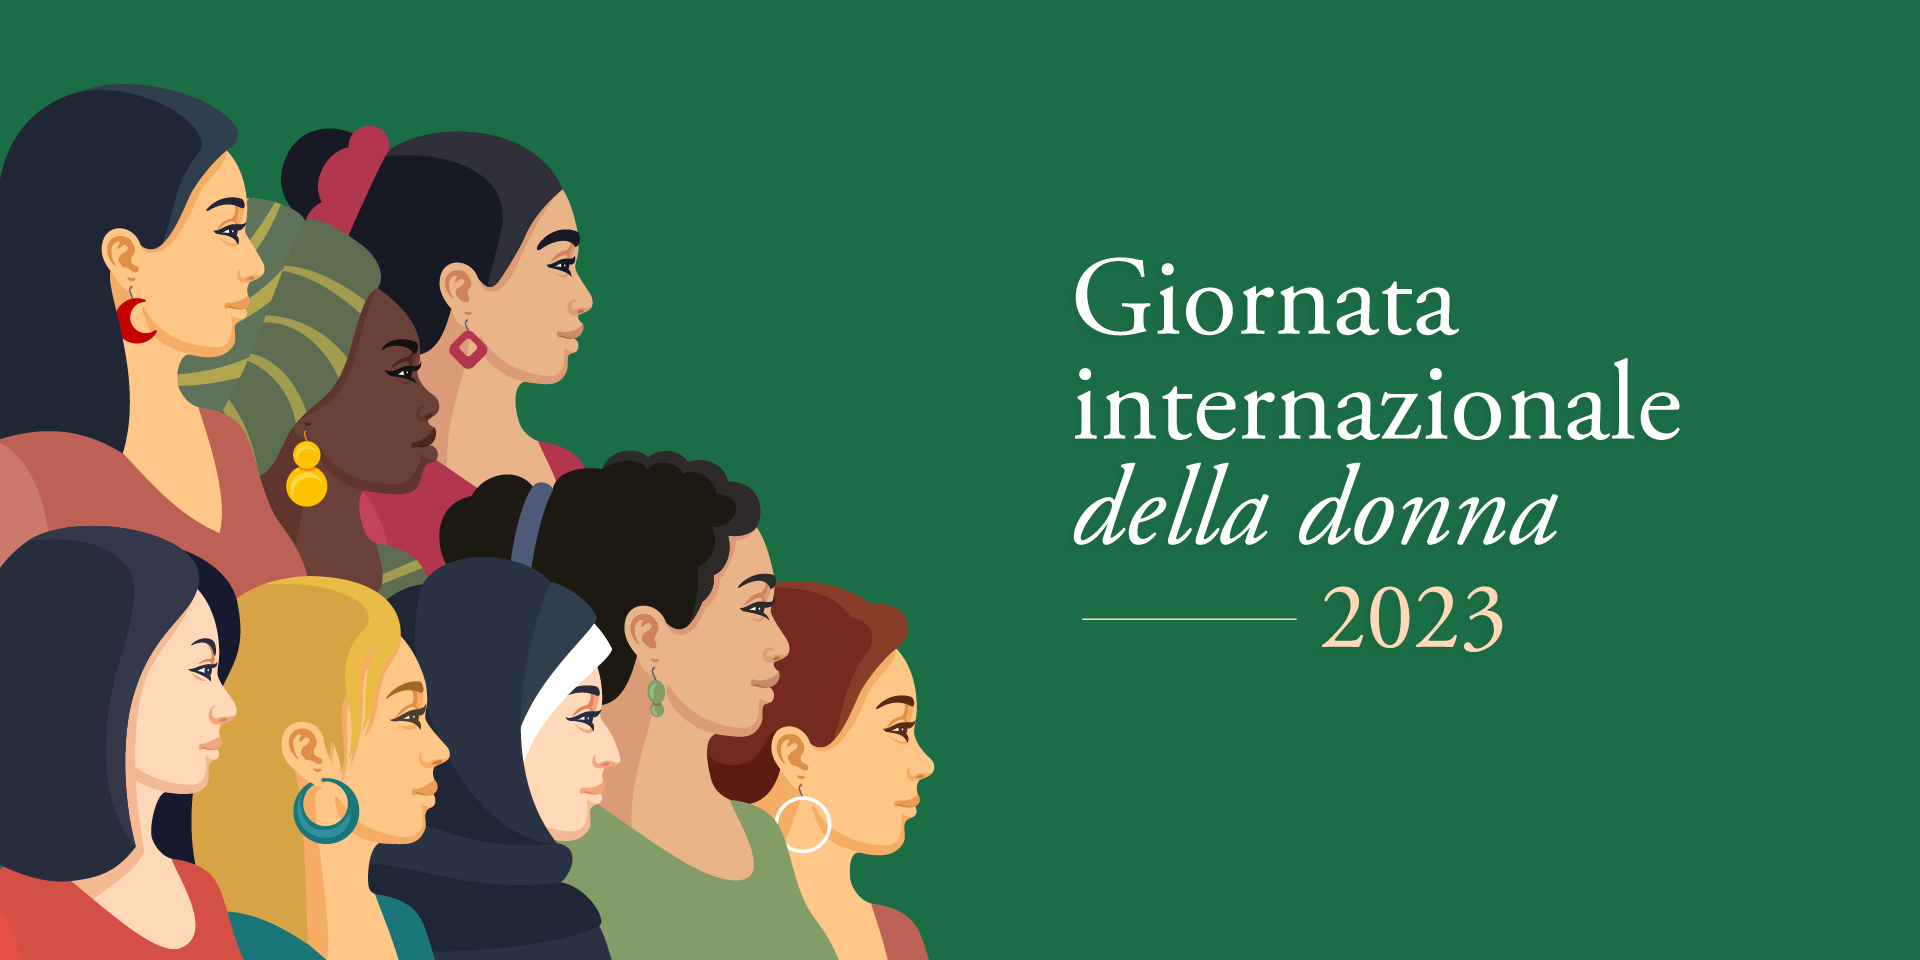 Giornata internazionale della donna: ecco gli eventi che si terranno a Siena